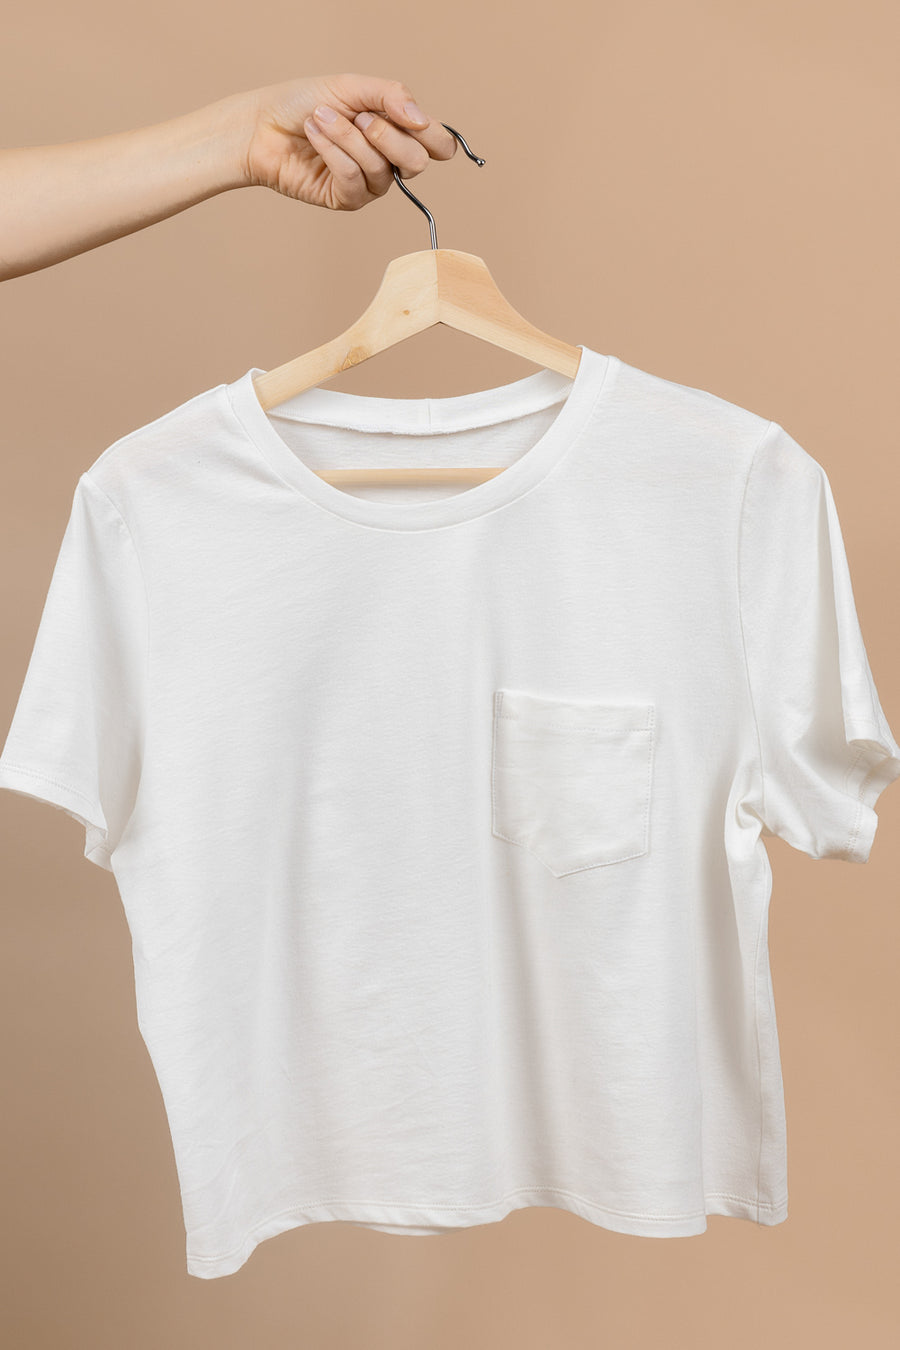 Core T-Shirt Pattern | FREE T-Shirt Pattern in sizes 0-32 | Closet Core Patterns